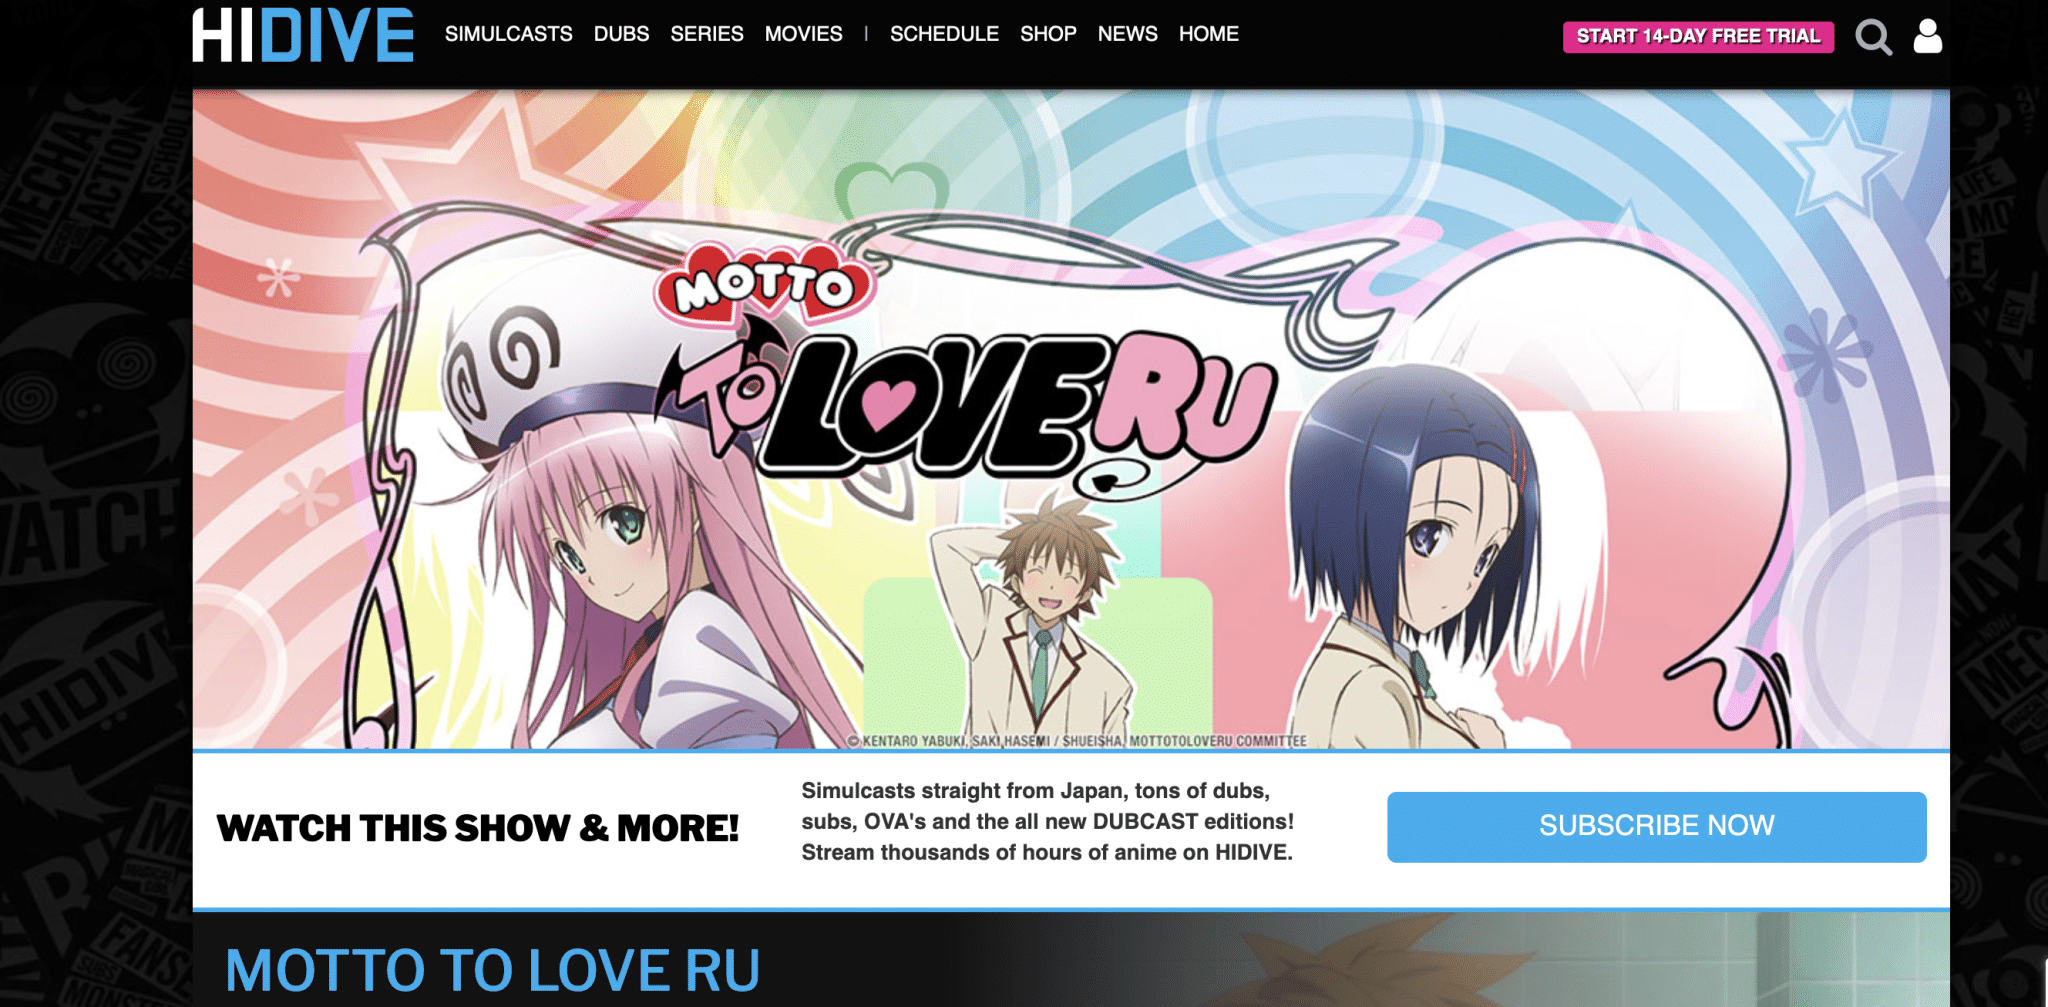 Motto To Love Ru at HIDIVE, Kentaro Yabuki, Saki Hasemi/ Shueisha, Toloveru Project